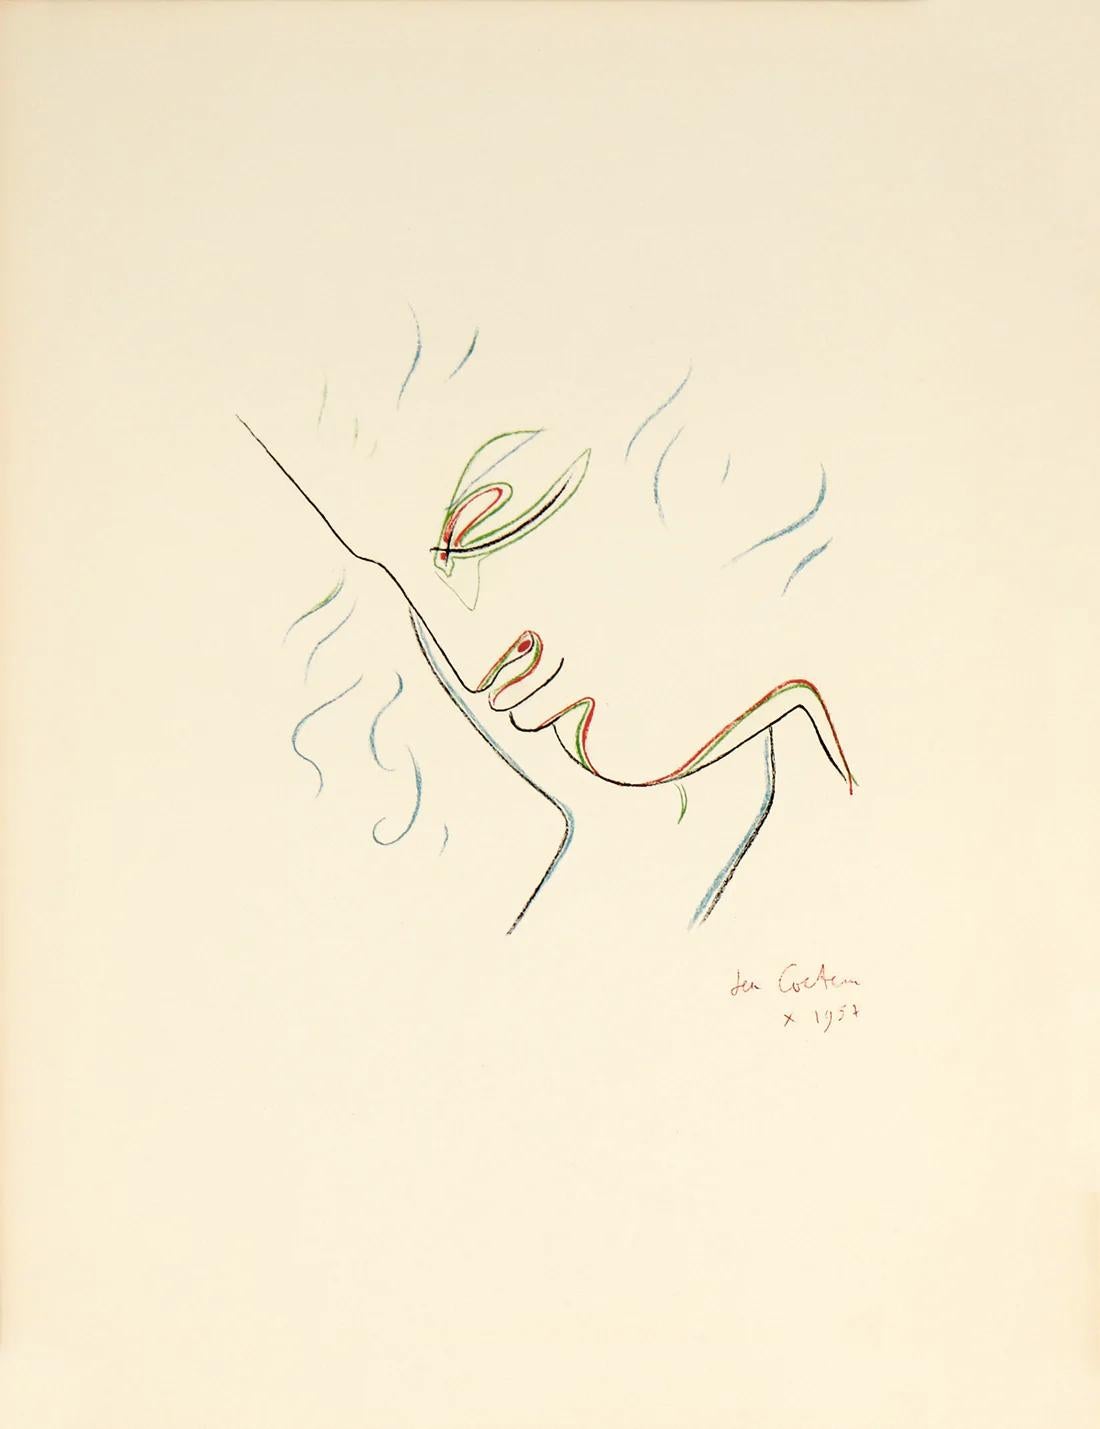 Künstler: Jean Cocteau

Medium: Original-Lithographie, 1956 / 1975

Abmessungen: 19,5 x 25,5 Zoll, 49,5 x 64,8 cm

Arches Papier - Ausgezeichneter Zustand A

Diese Originallithographie stammt aus der illustrierten Mappe: "Jean Cocteau: 25